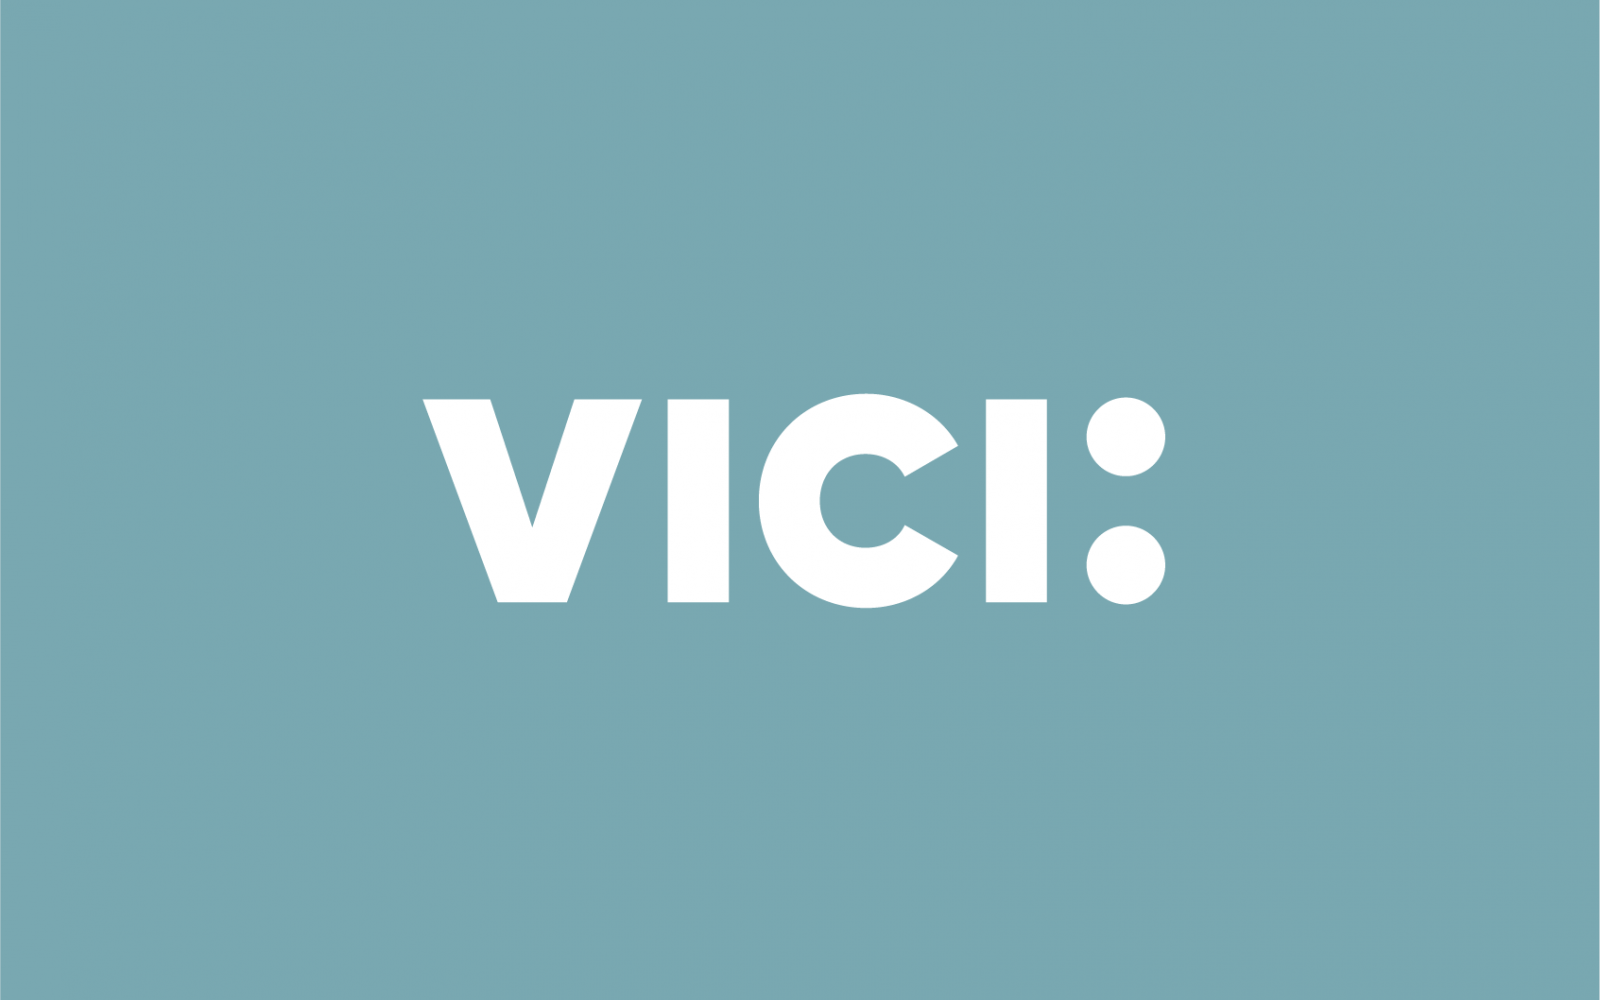 Vici advokatbyrås nya logga i vitt och blått